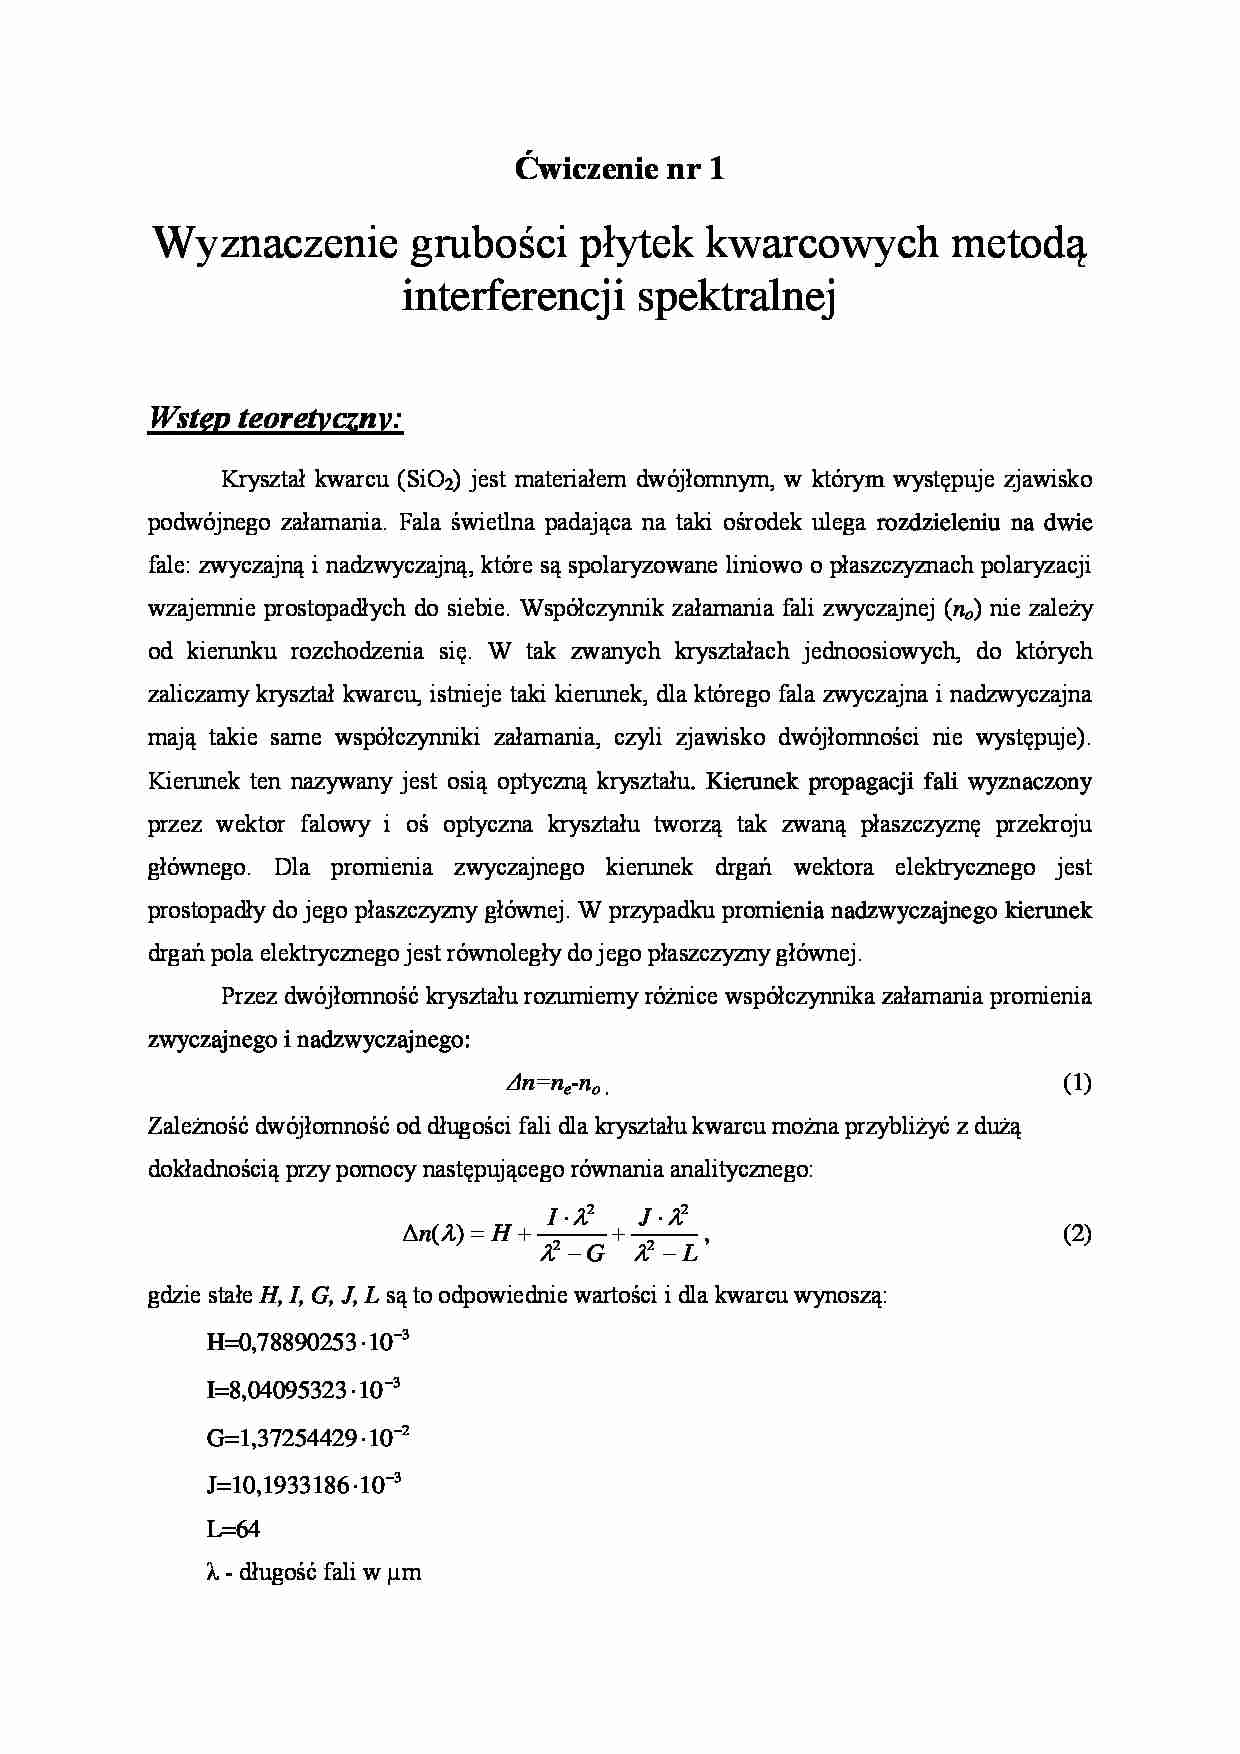 Wyznaczenie grubości płytek kwarcowych metodą interferencji spektralnej -ćwiczenia - strona 1